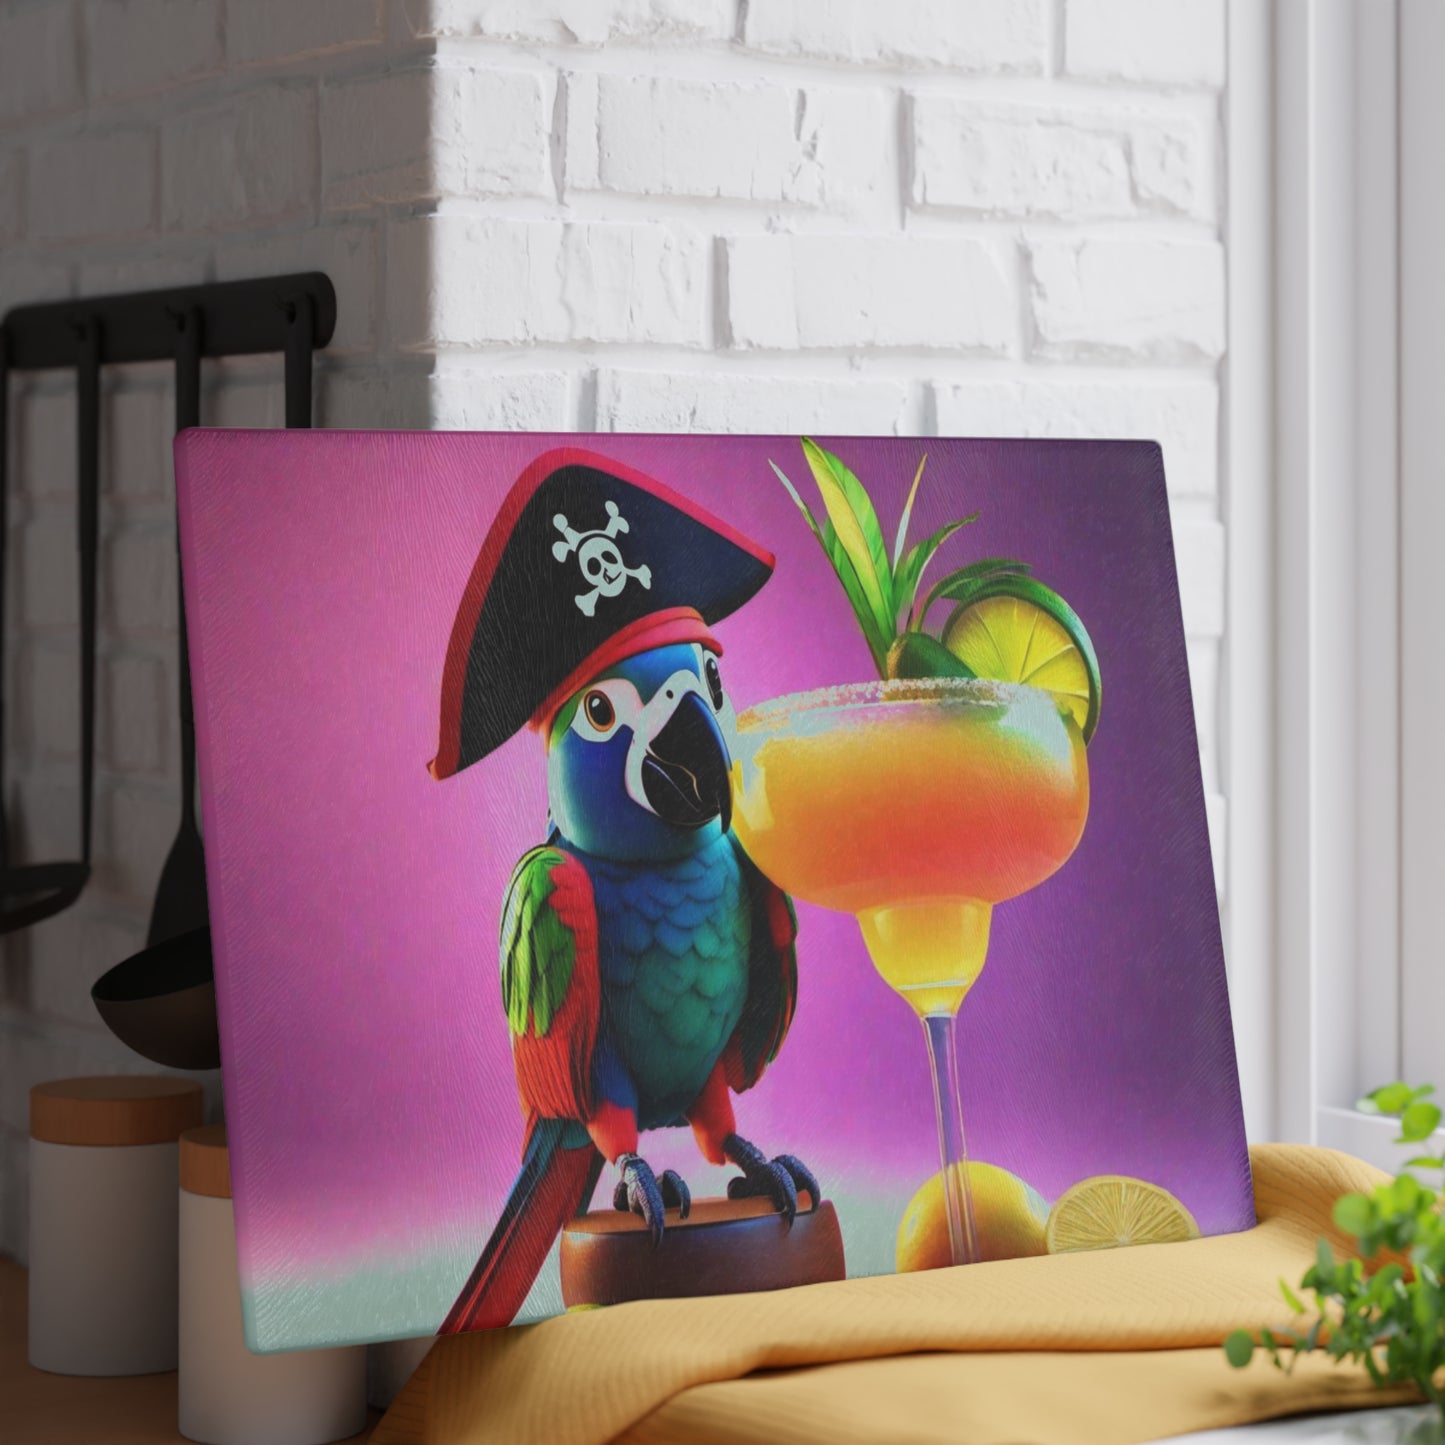 Pirate Parrot Glass Cutting Board